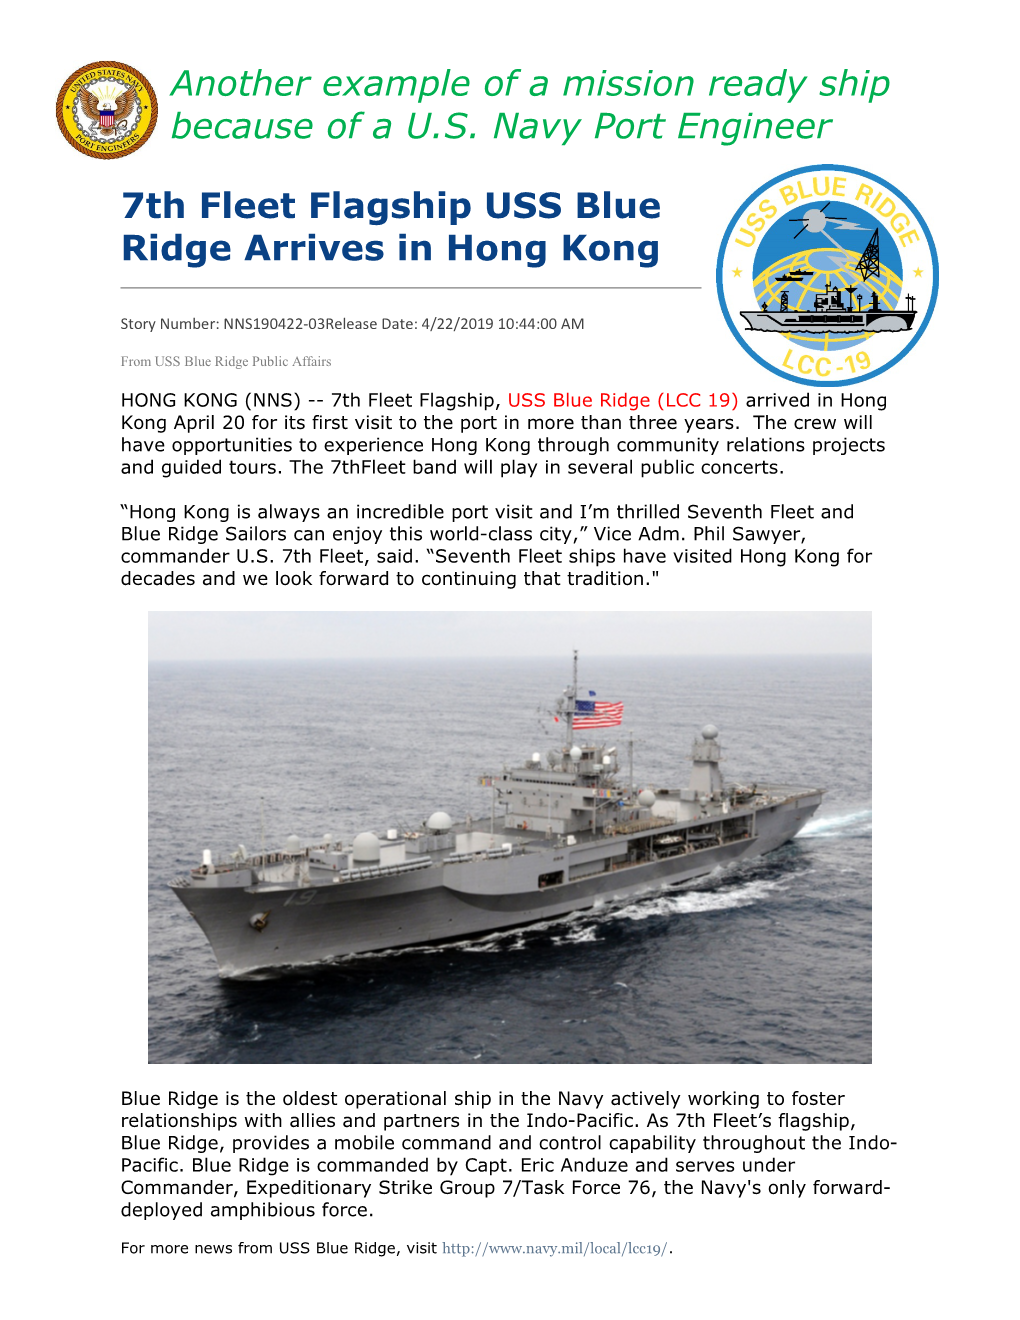 USS Blue Ridge Arrives in Hong Kong